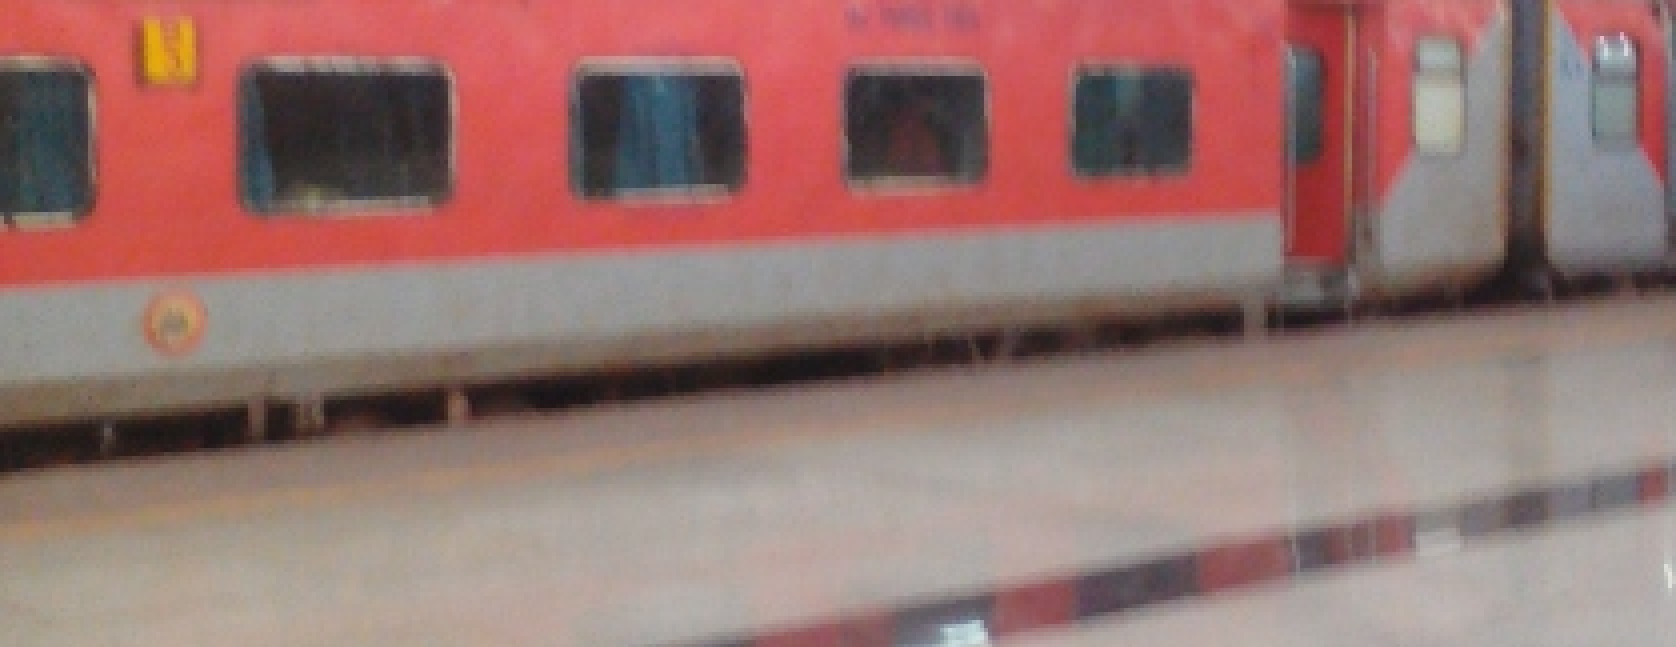 Reaching Switzerland by Train